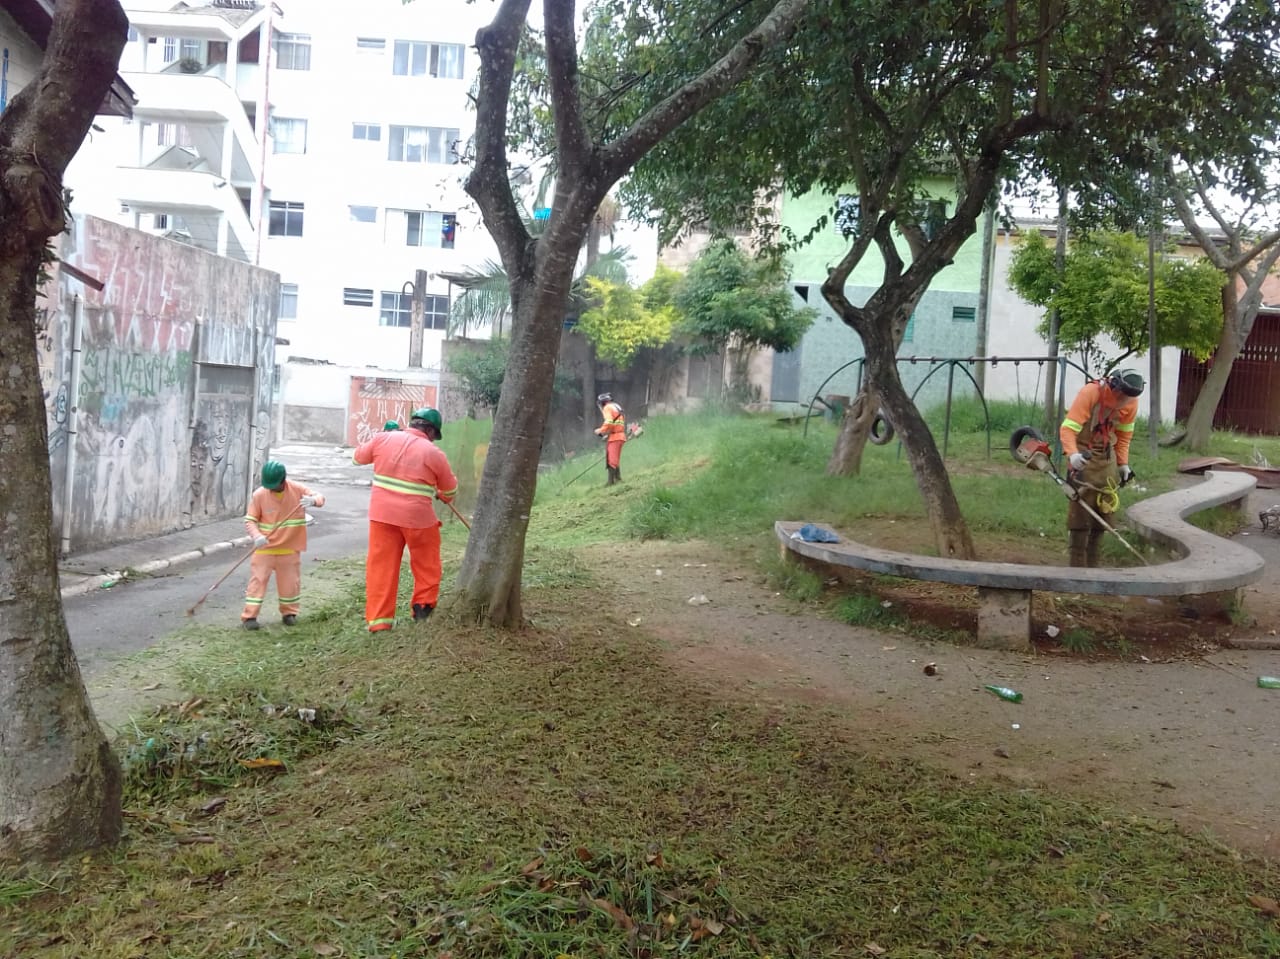 #PraCegoVer - Trabalhadores da Subprefeitura cortam grama em praceta do local. Há um banco de concreto de formato curvo. Há árvores no local.